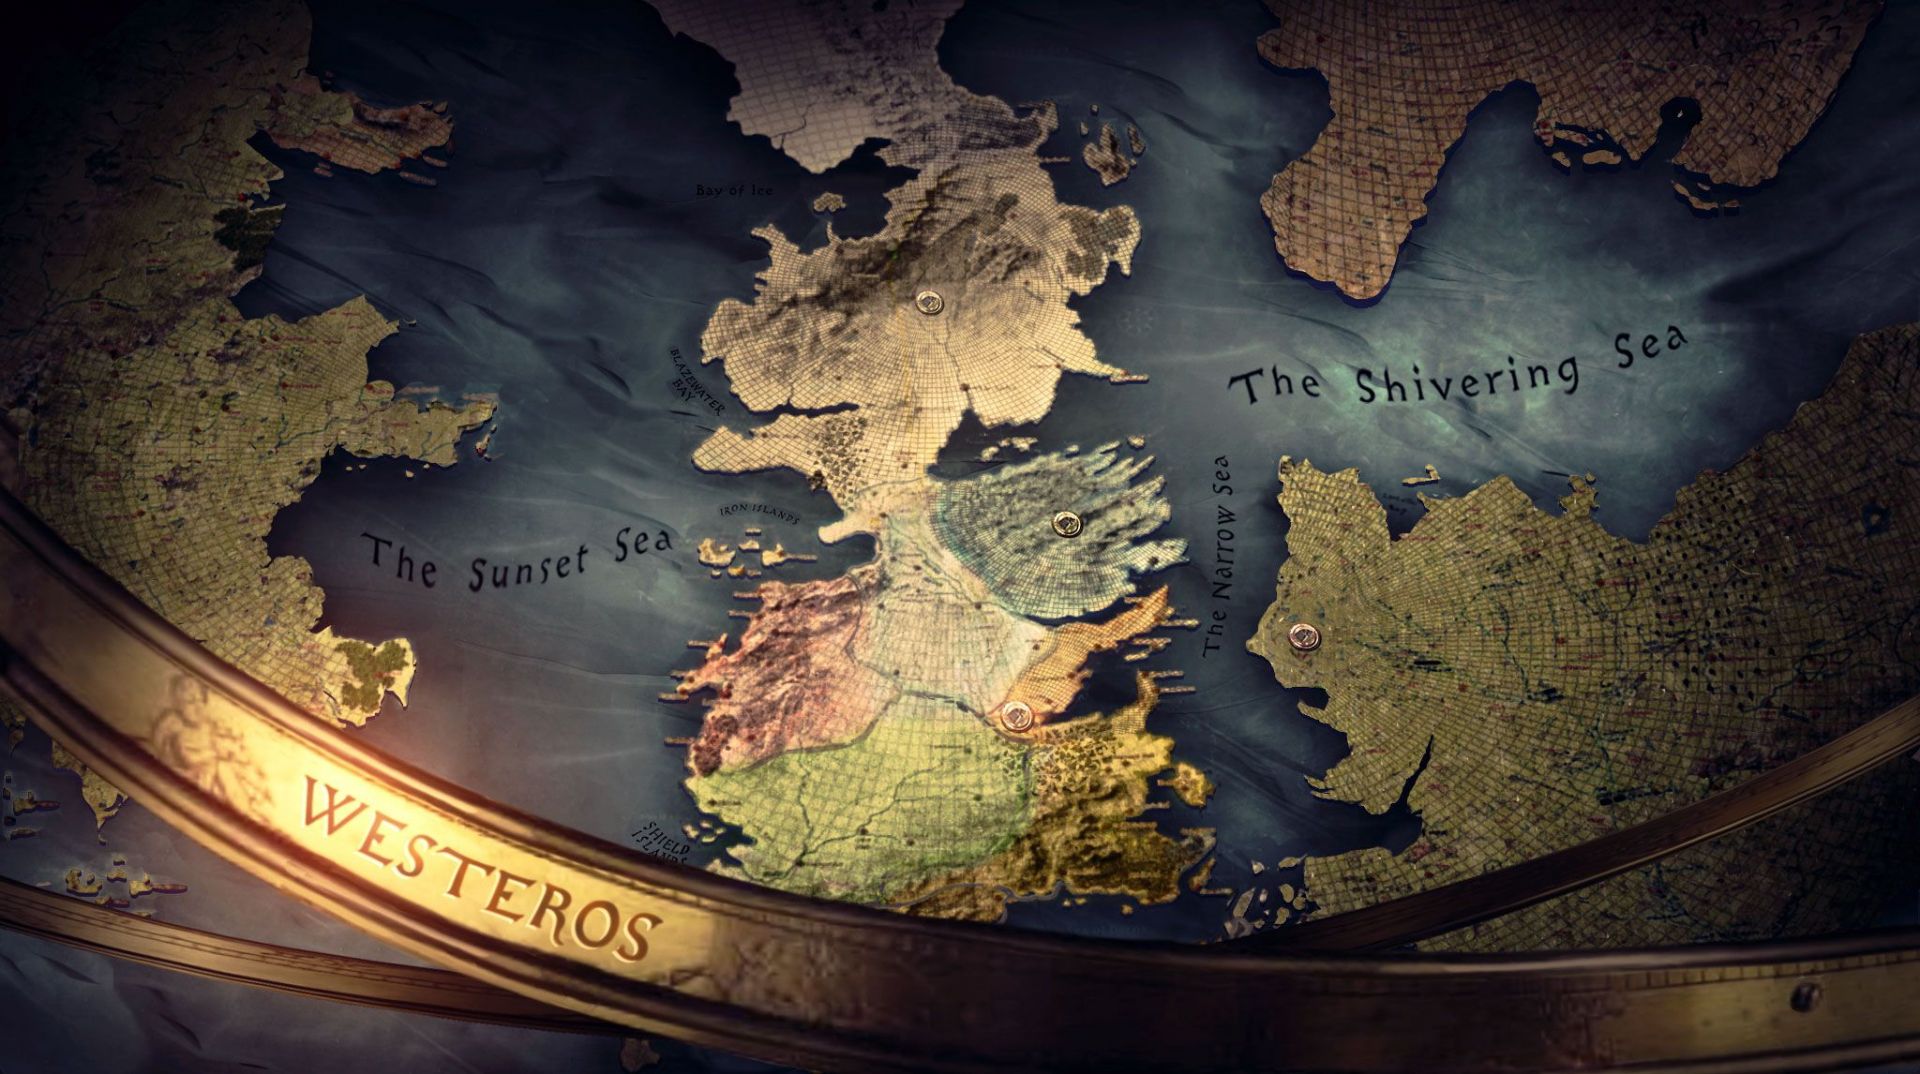 Создана интерактивная карта мира «Игры престолов»